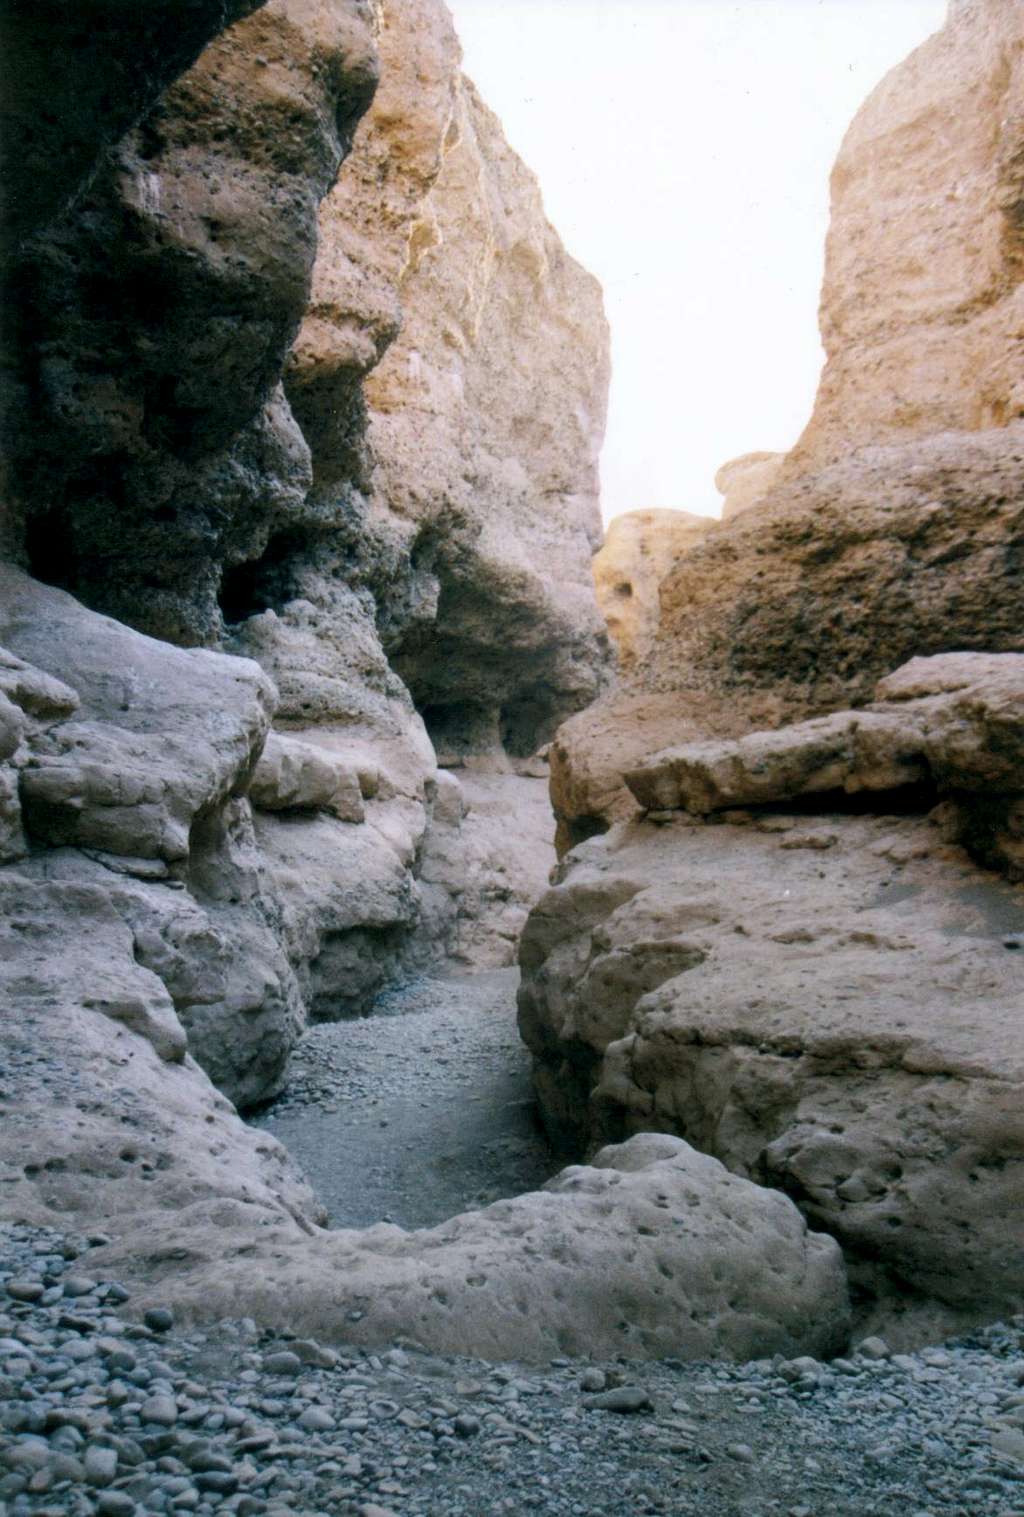 Inside Sesriem Canyon